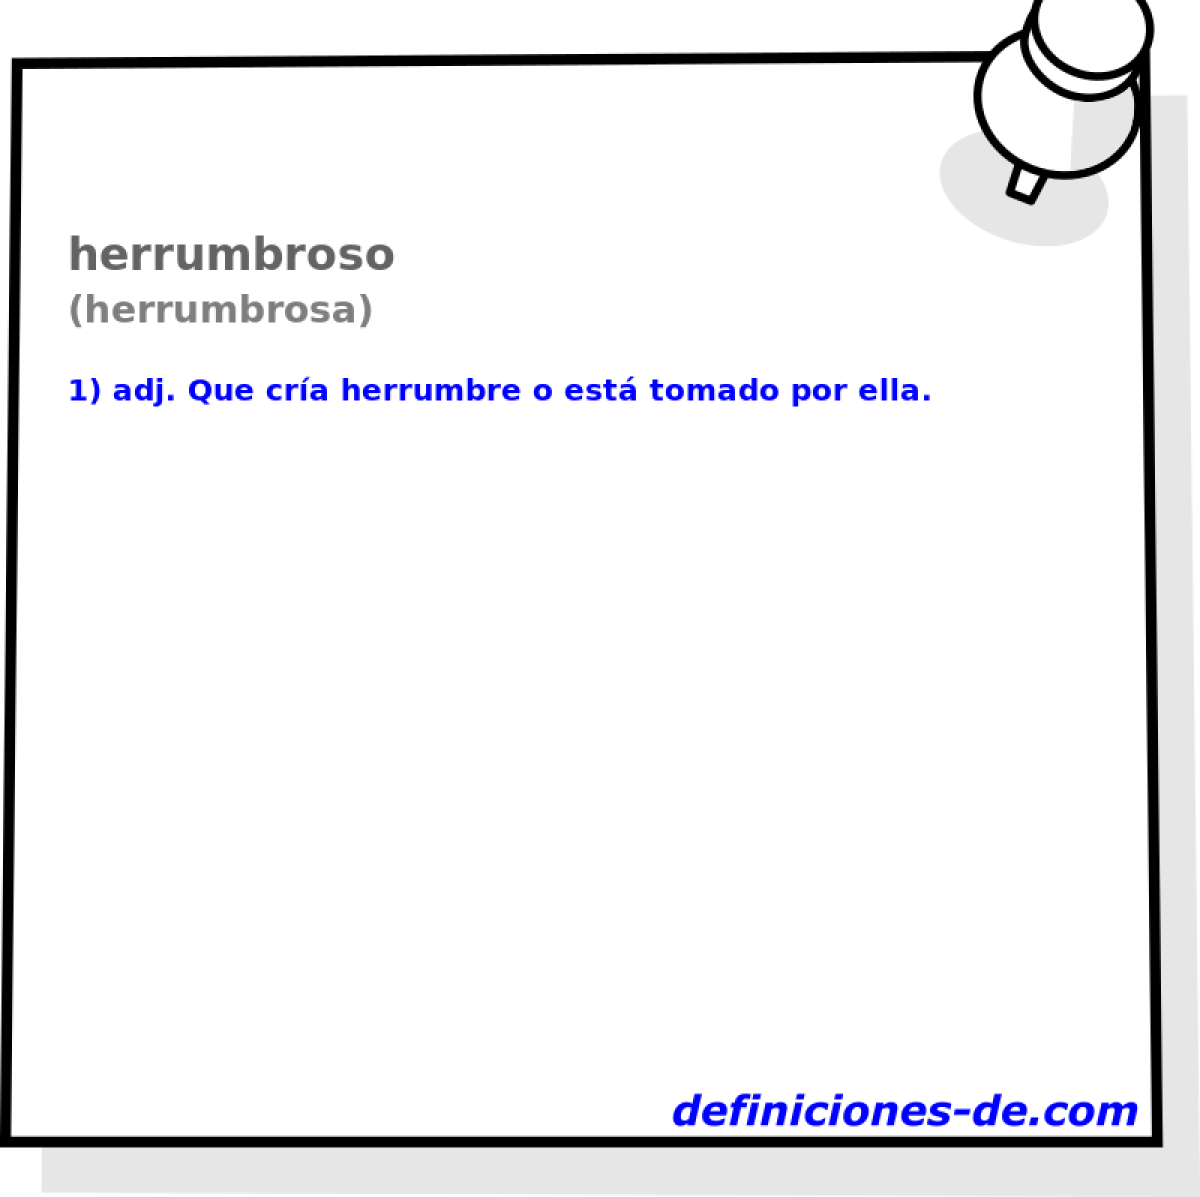 herrumbroso (herrumbrosa)